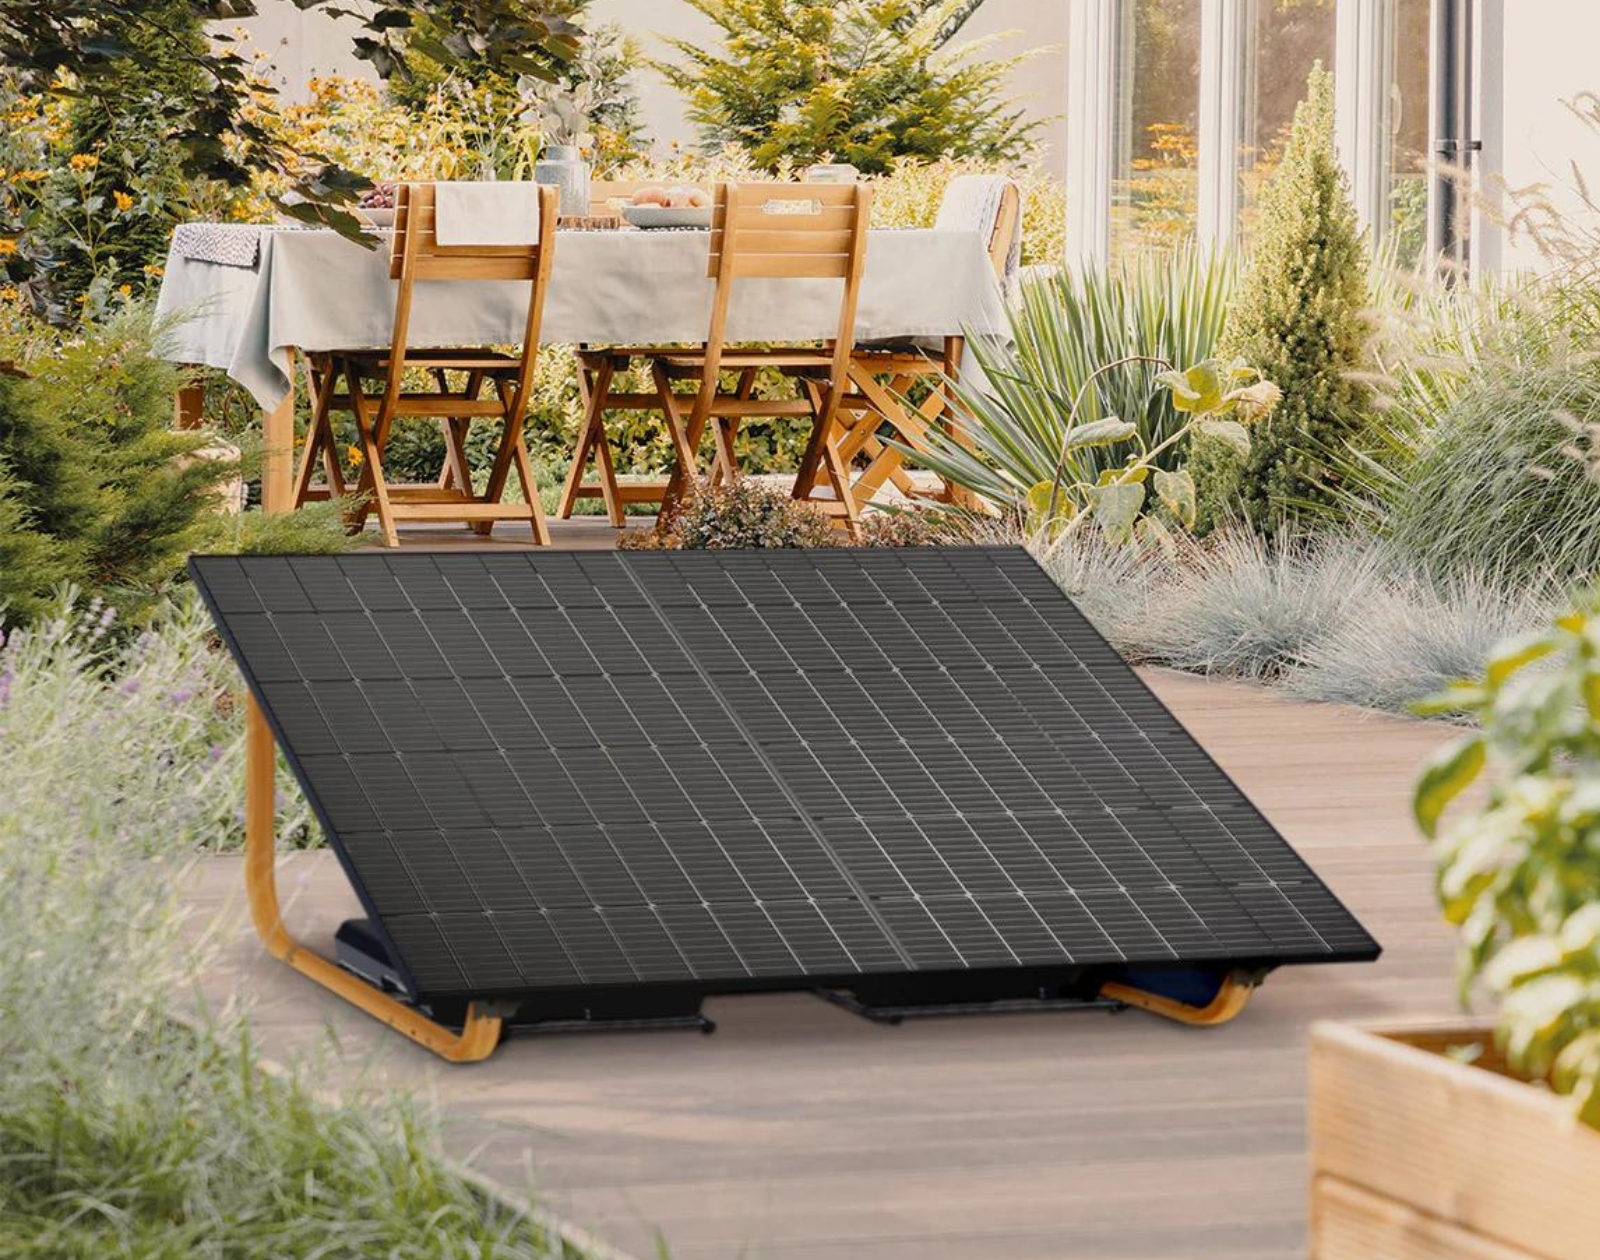 Dualsun lance un kit solaire prêt à brancher : que faut-il en penser ?